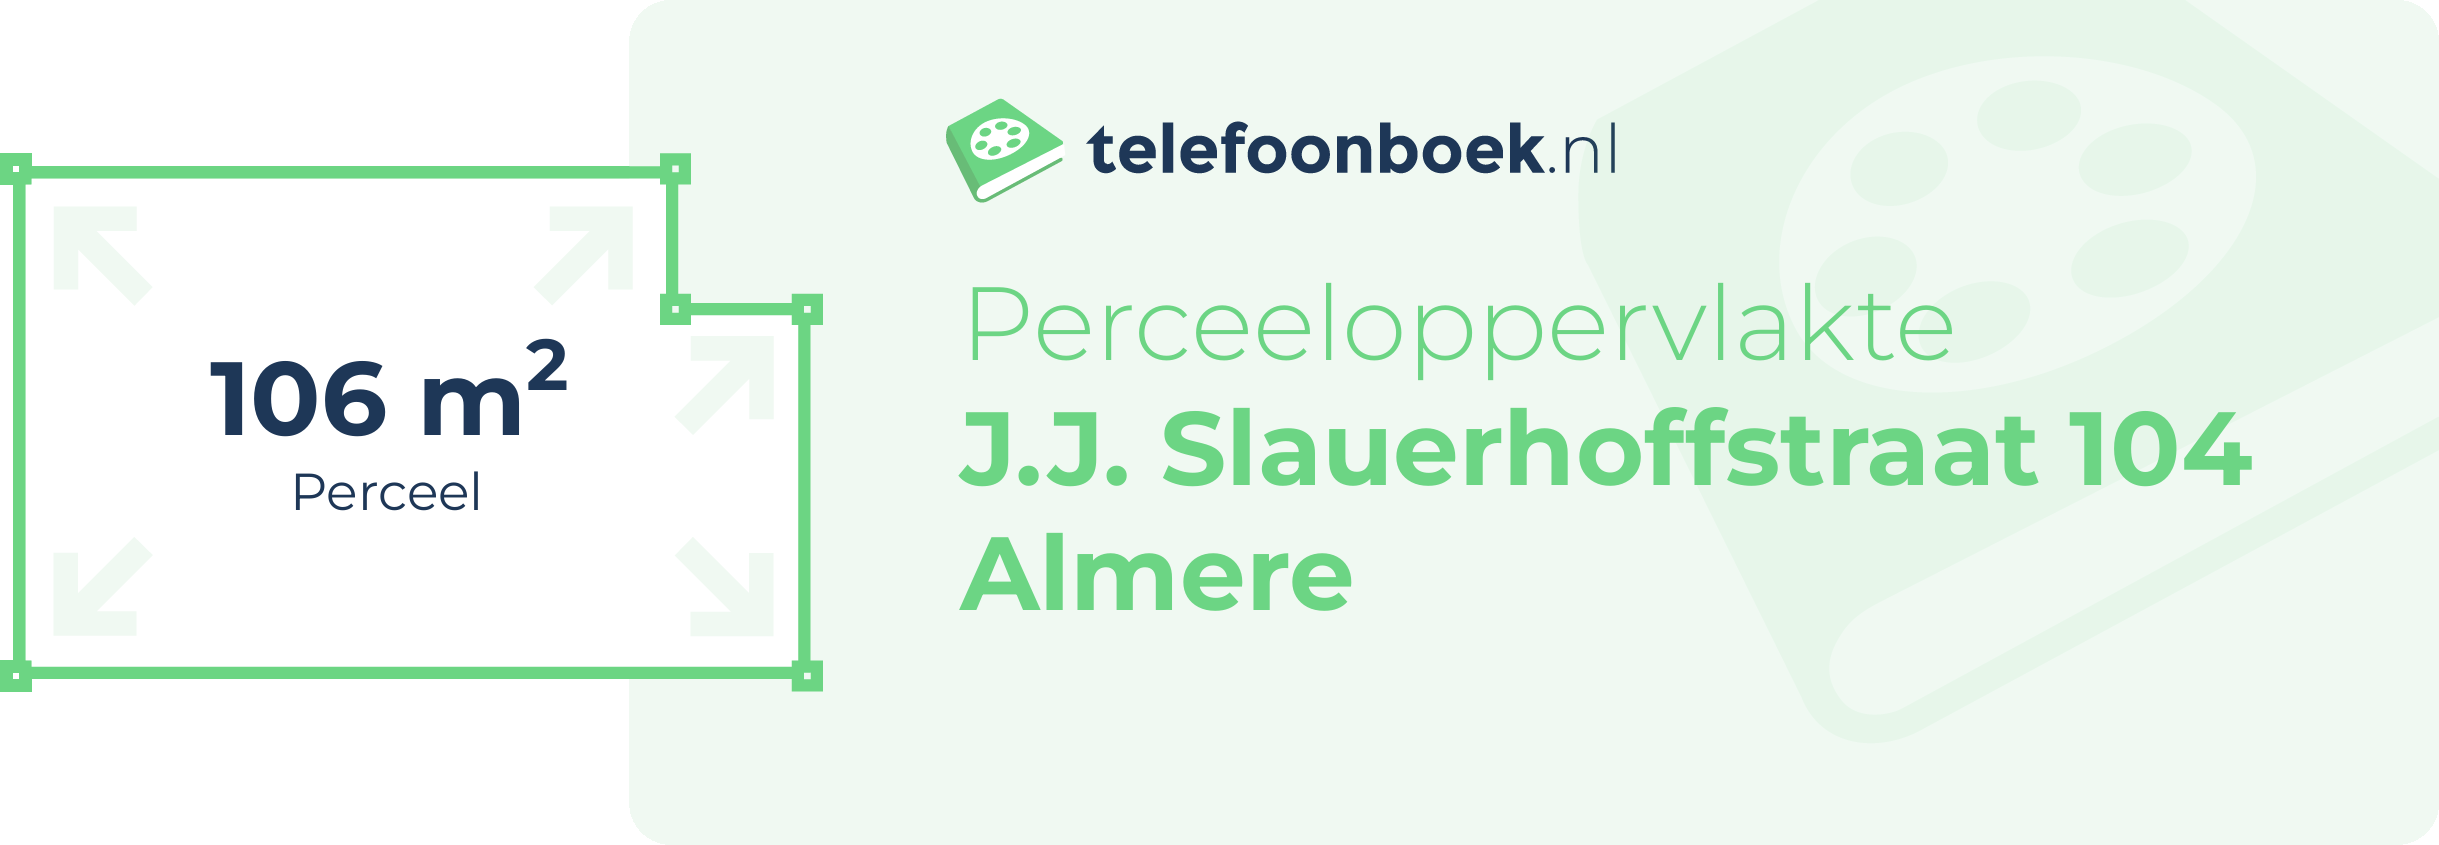 Perceeloppervlakte J.J. Slauerhoffstraat 104 Almere